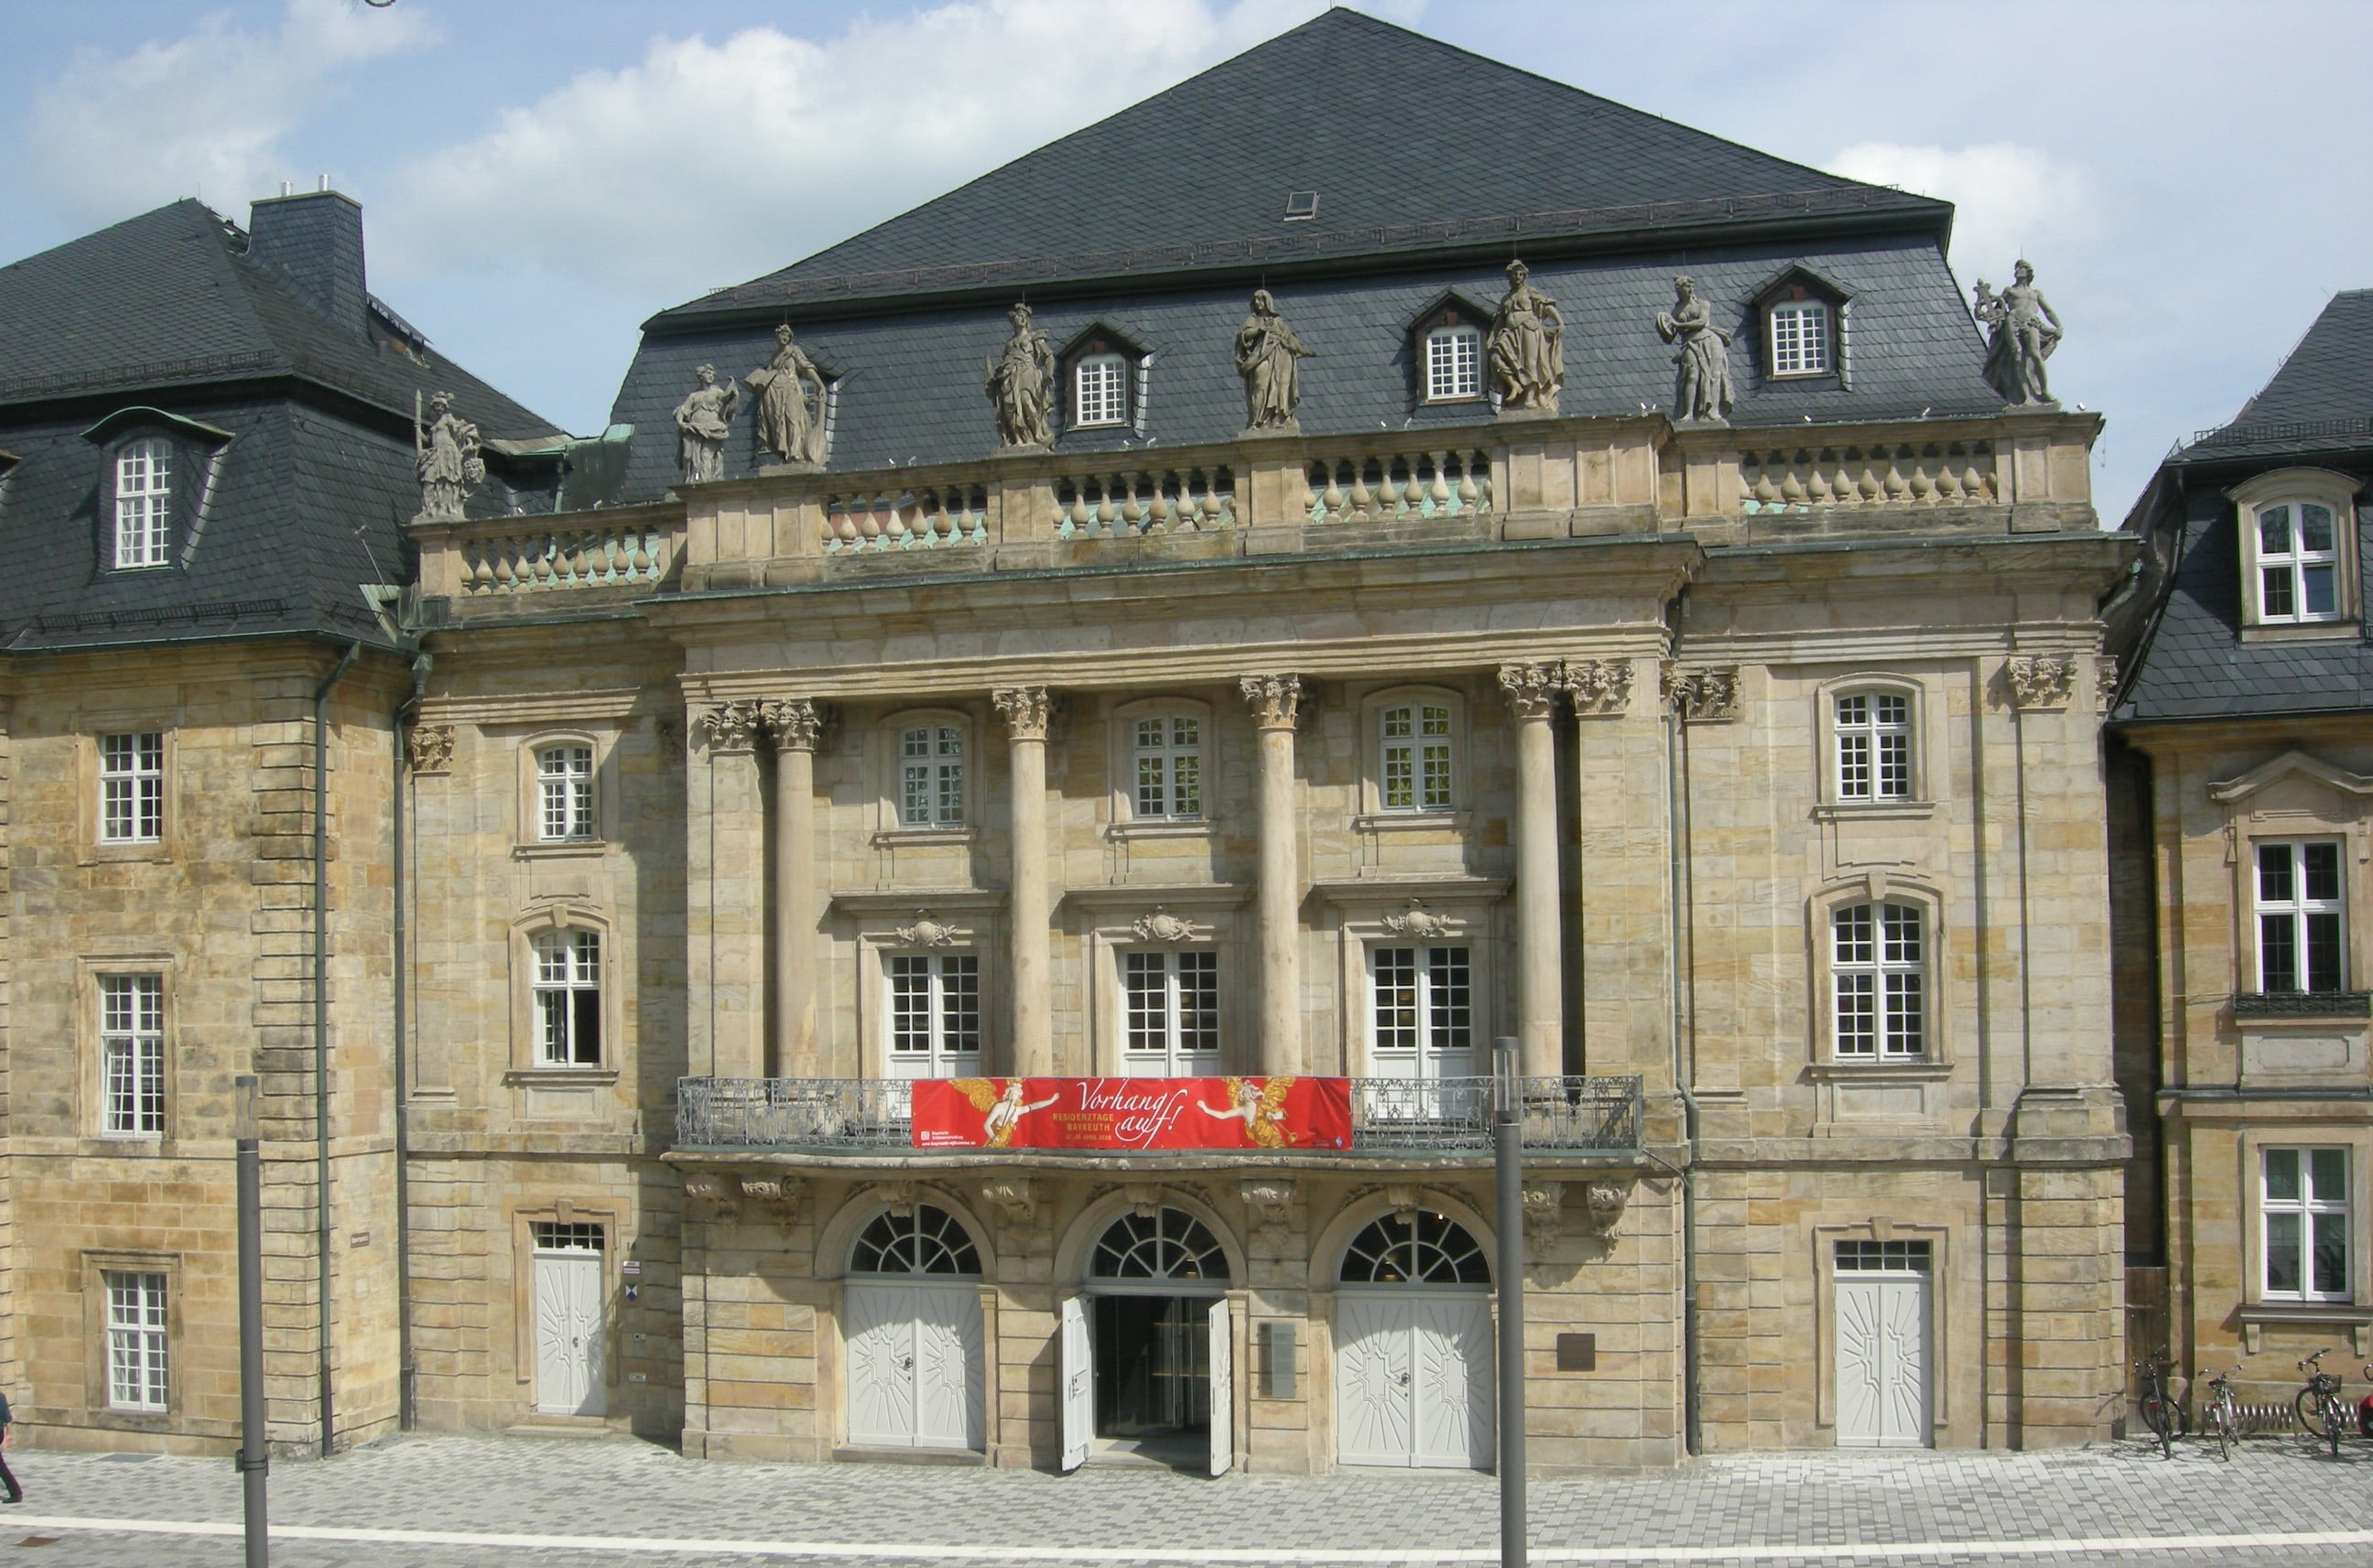 Eingangsansicht Markgräflichen Opernhaus - Sandsteinfassade mit Balkon, barocken Säulen und Skulpturen auf der Balustrade.